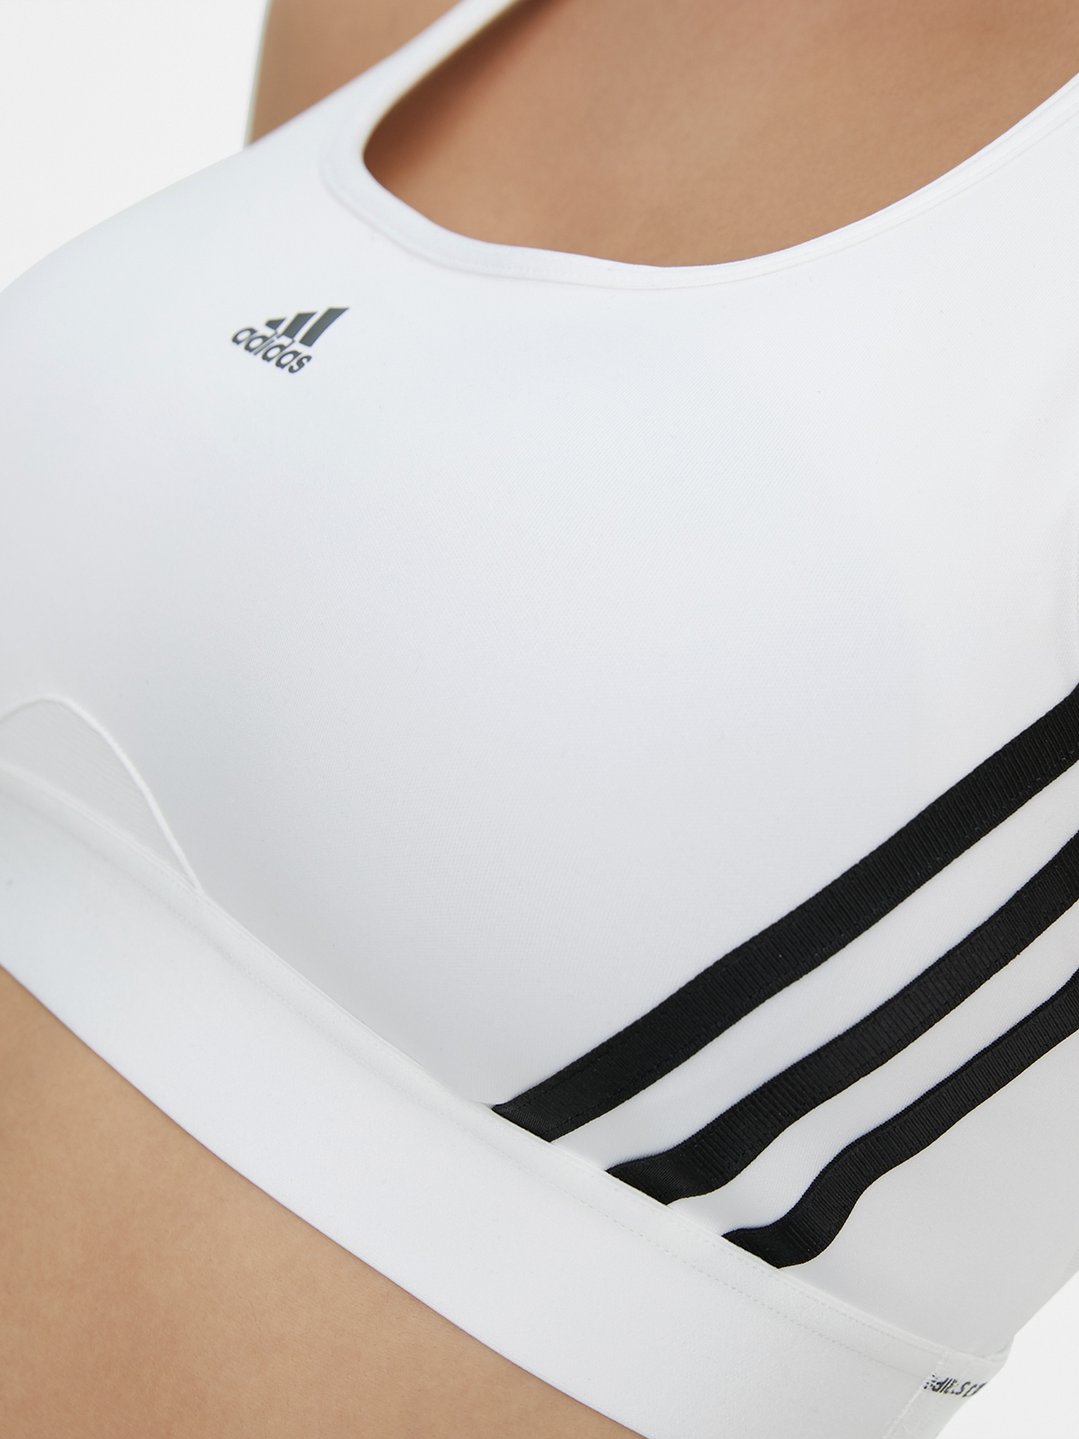 adidas Sports Bra ALL ME 3-Stripes - Black/White Women